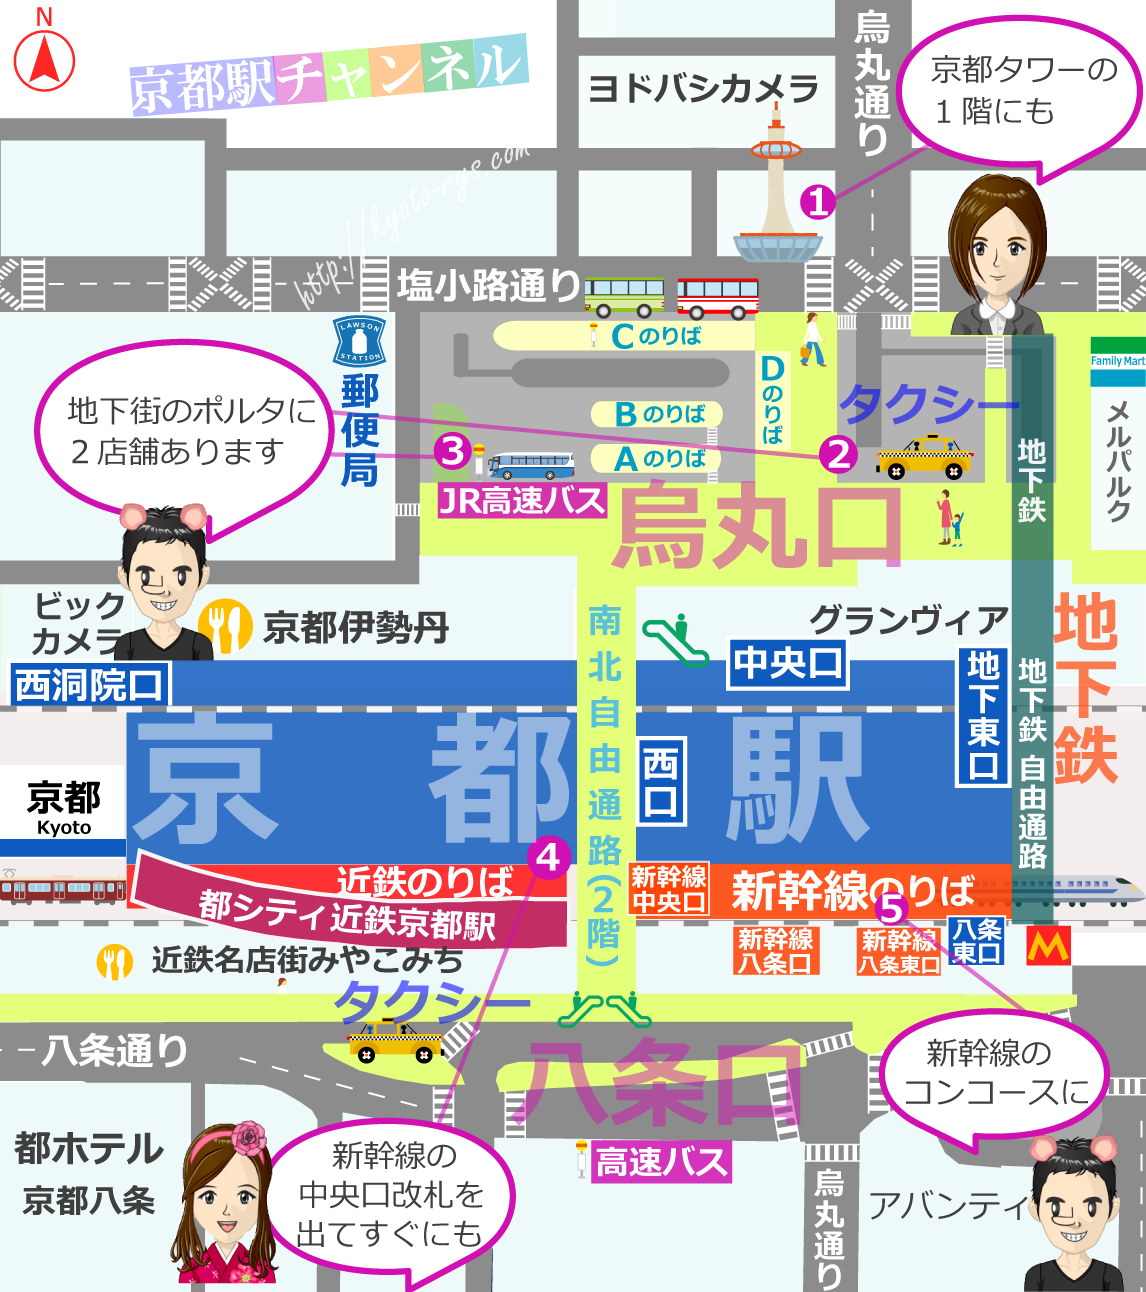 京都駅の地図とスタバ